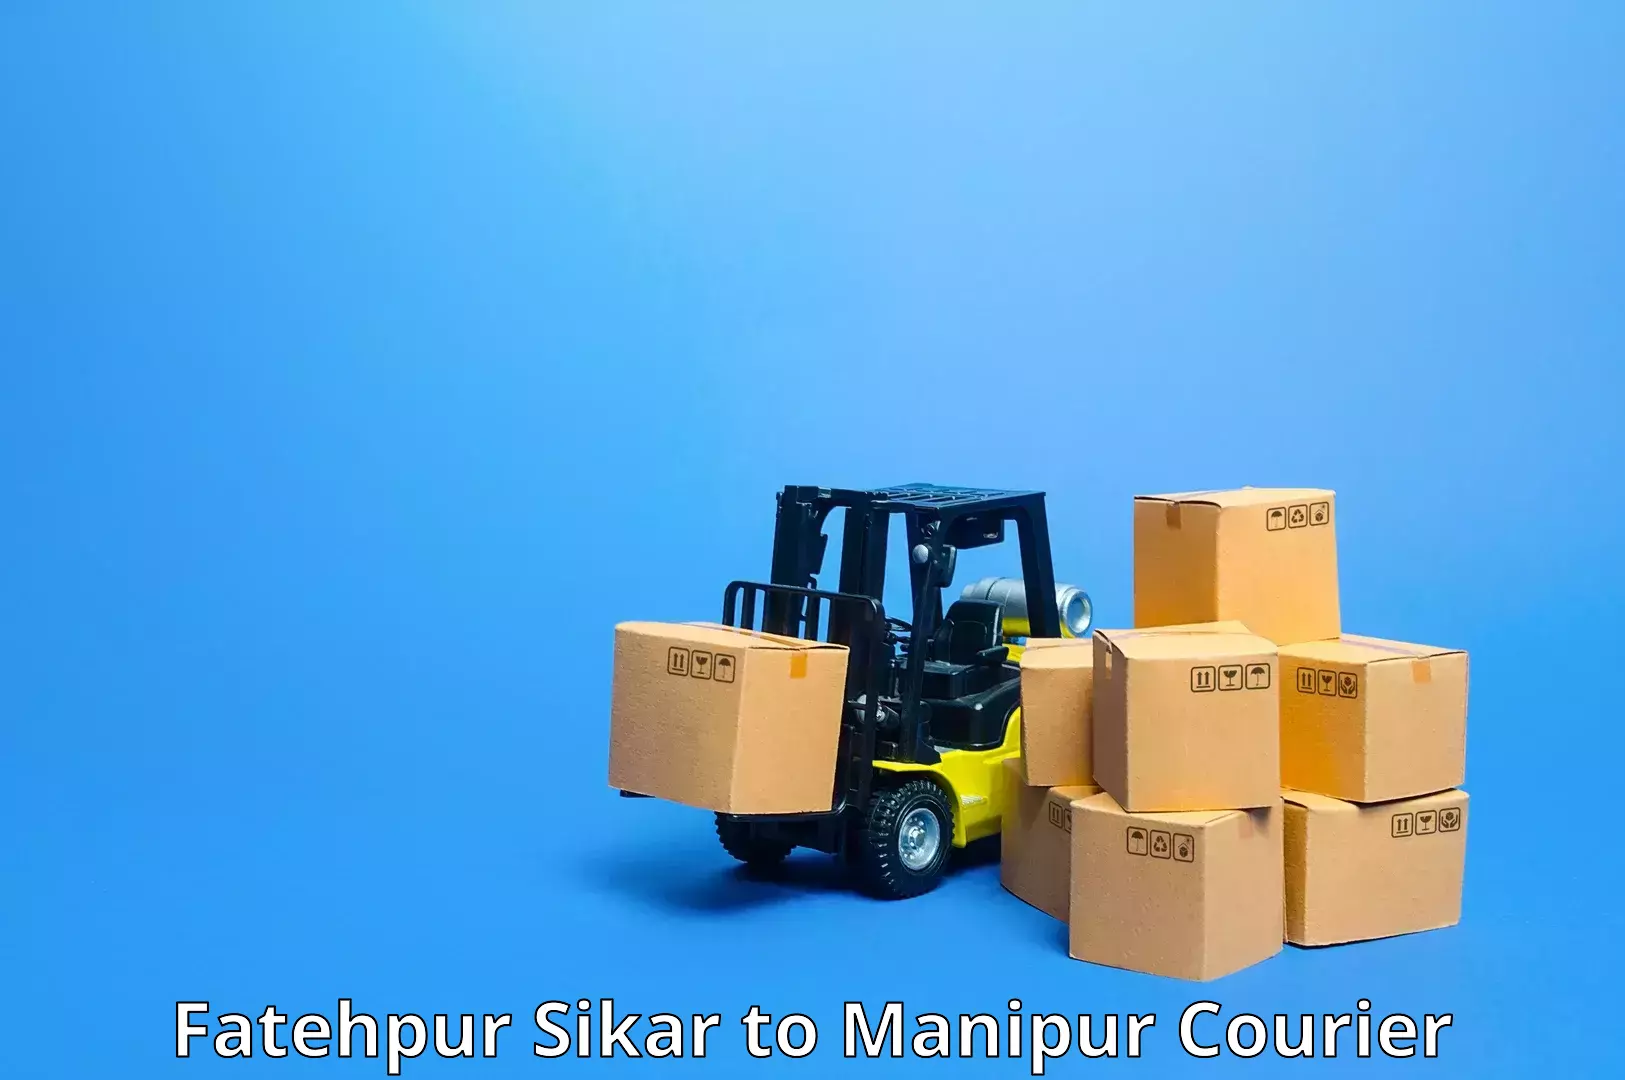 Express logistics service Fatehpur Sikar to Kanti